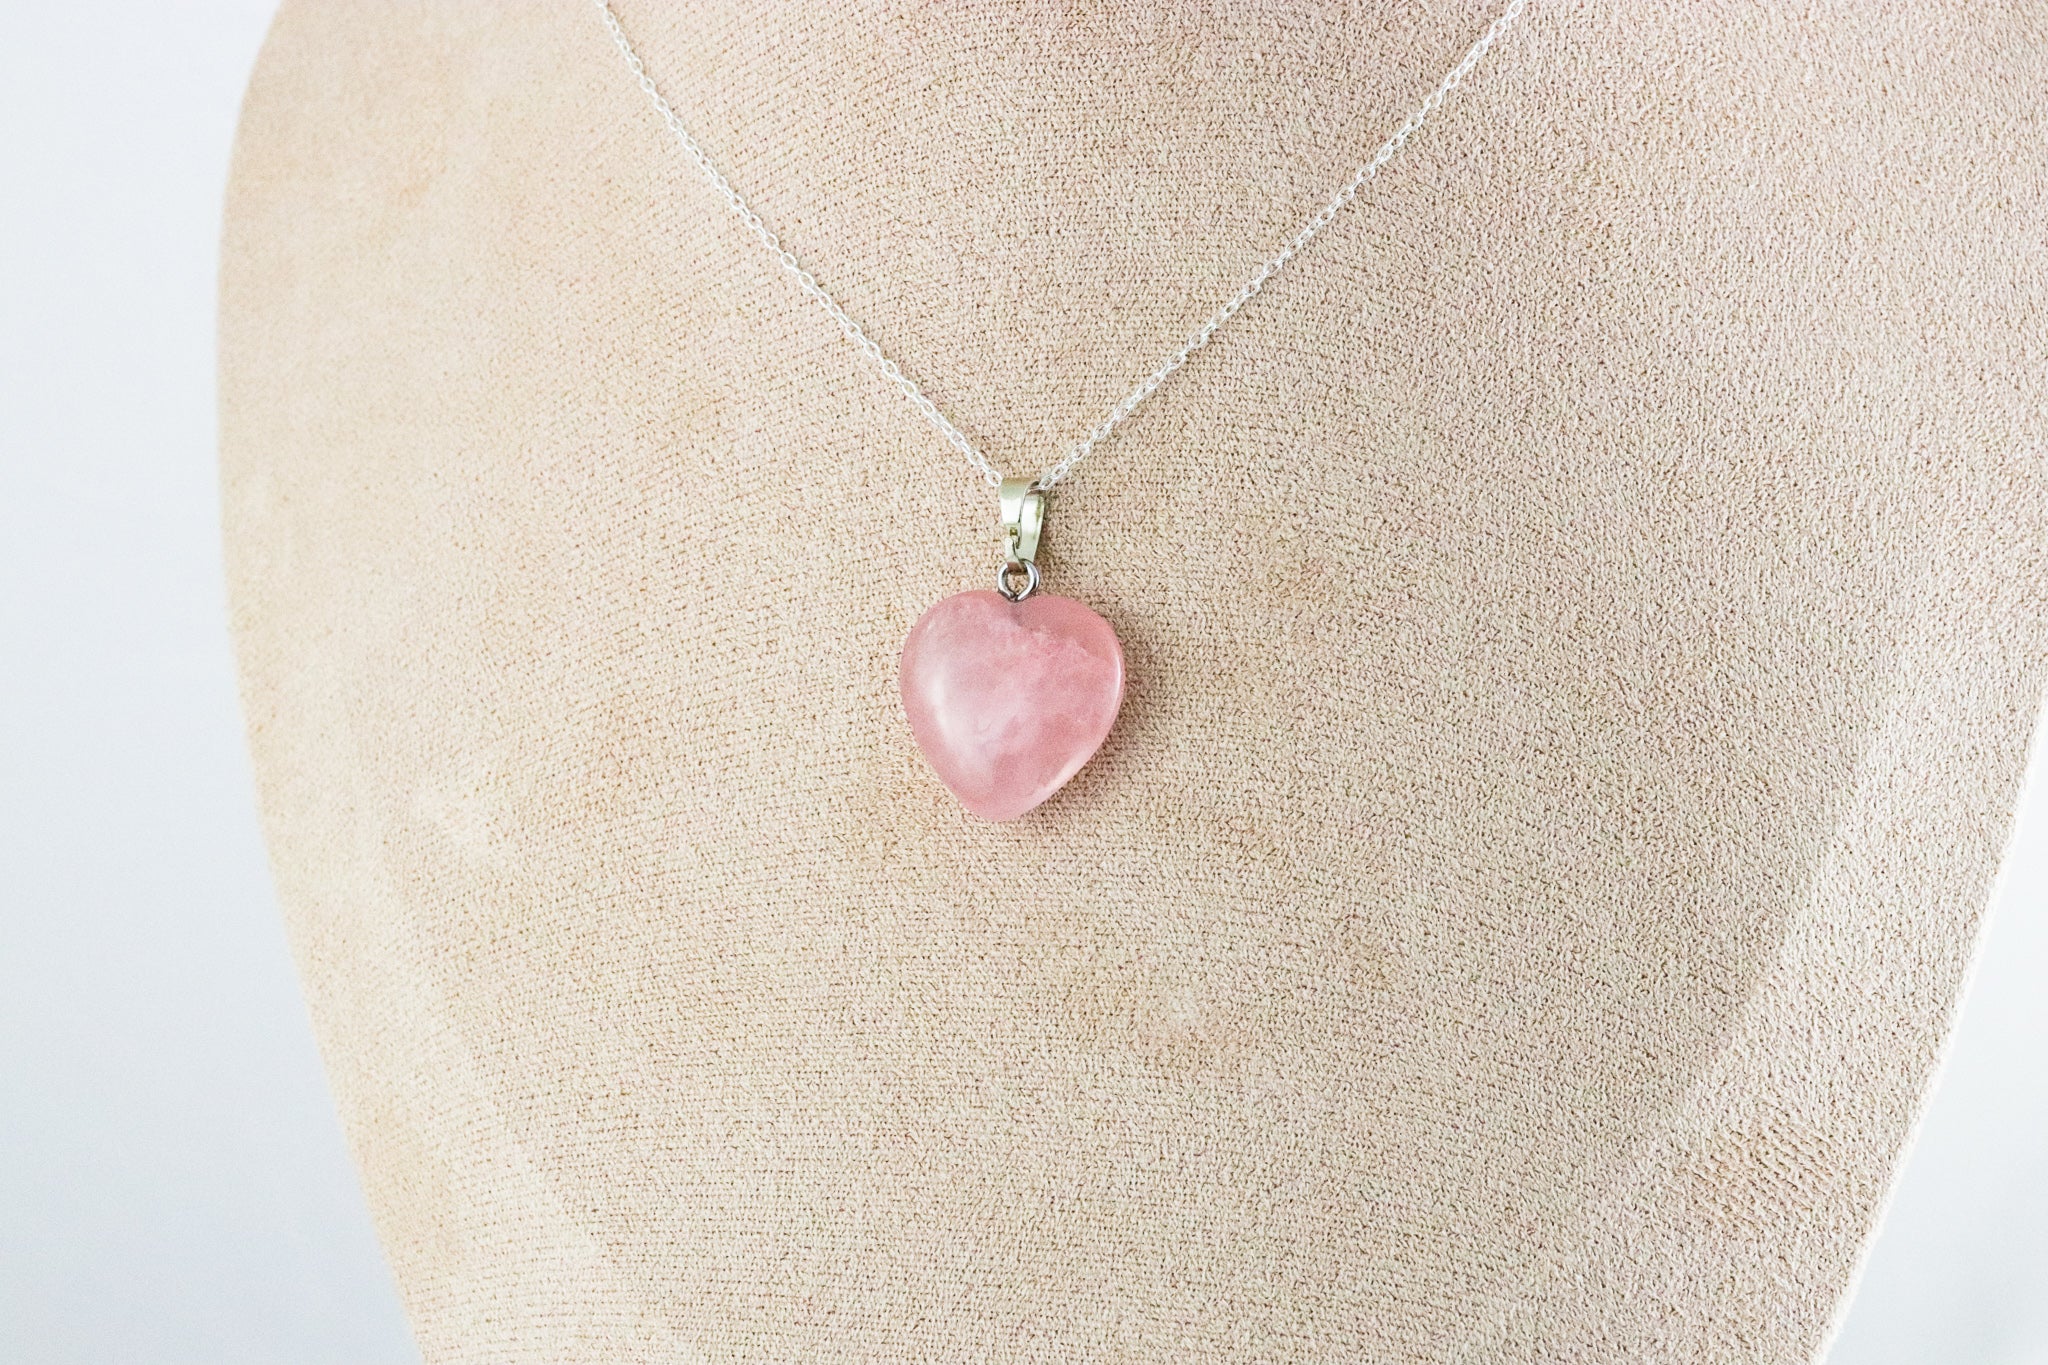 Rose Quartz Heart Pendant - Gentle Love Energy and Healing Properties - Pendants, Stones & Charms - Bijou Her -  -  - 